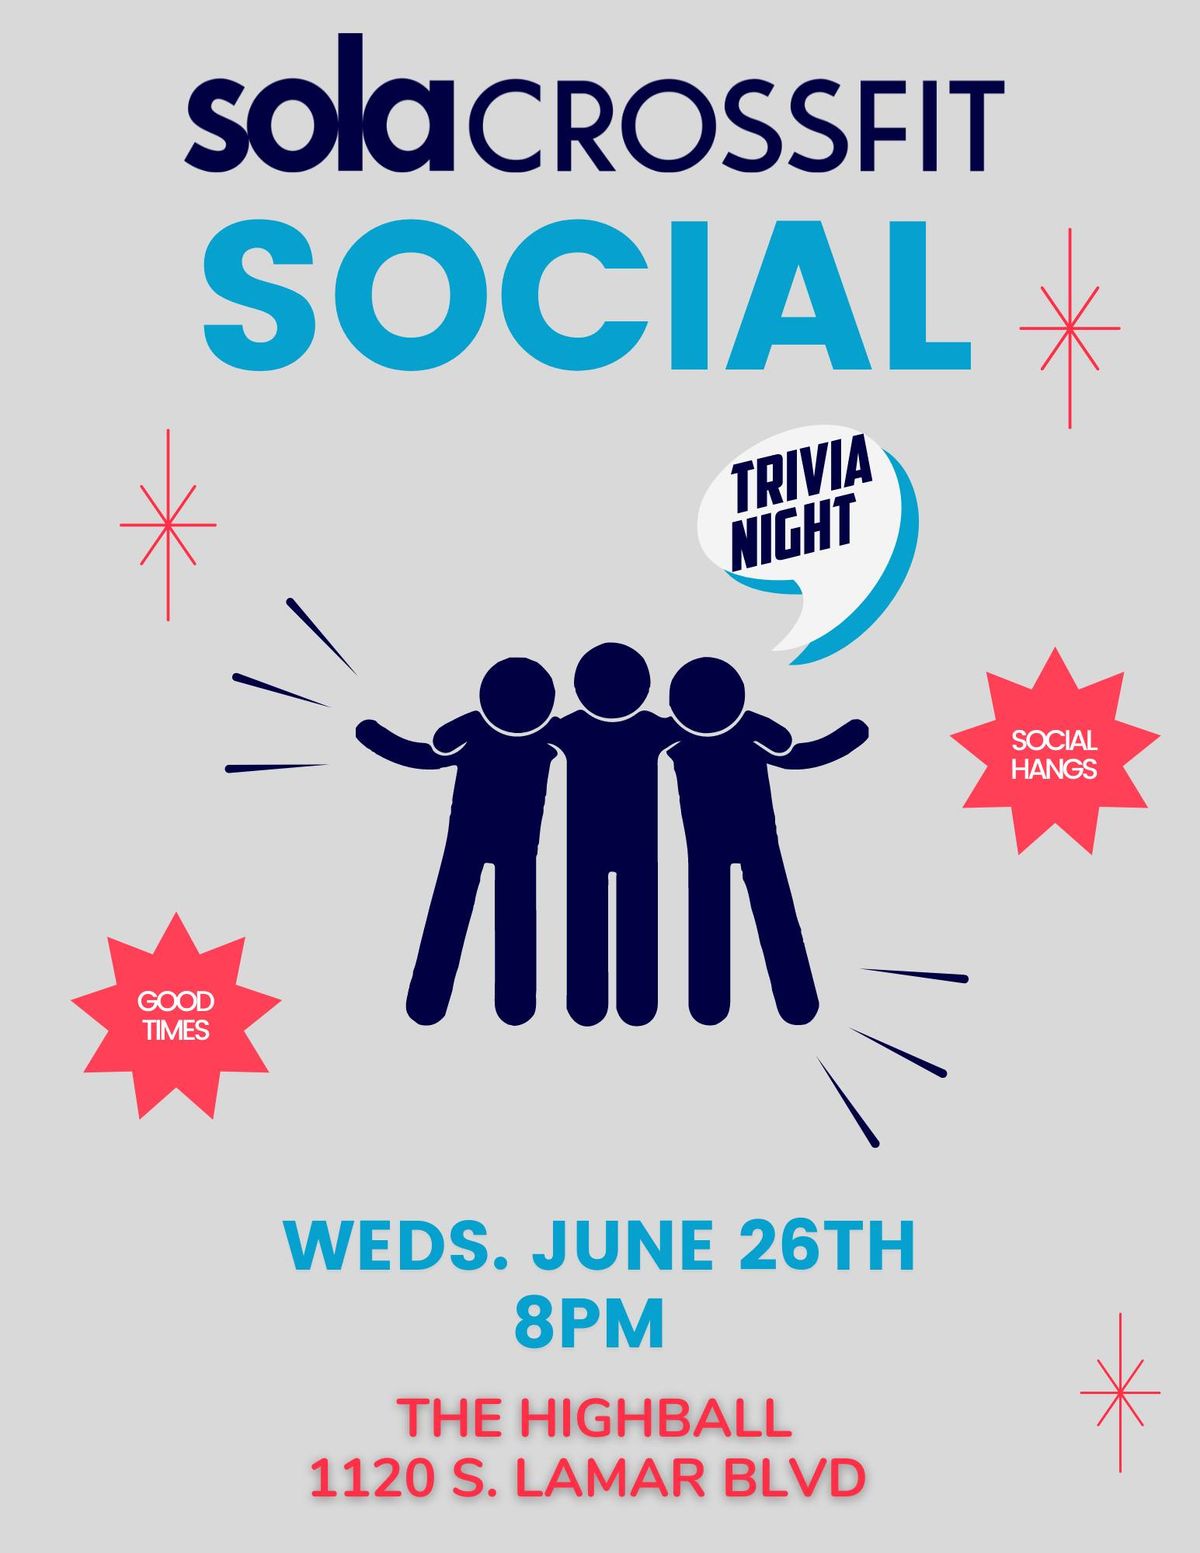 SoLa Social - Trivia Night